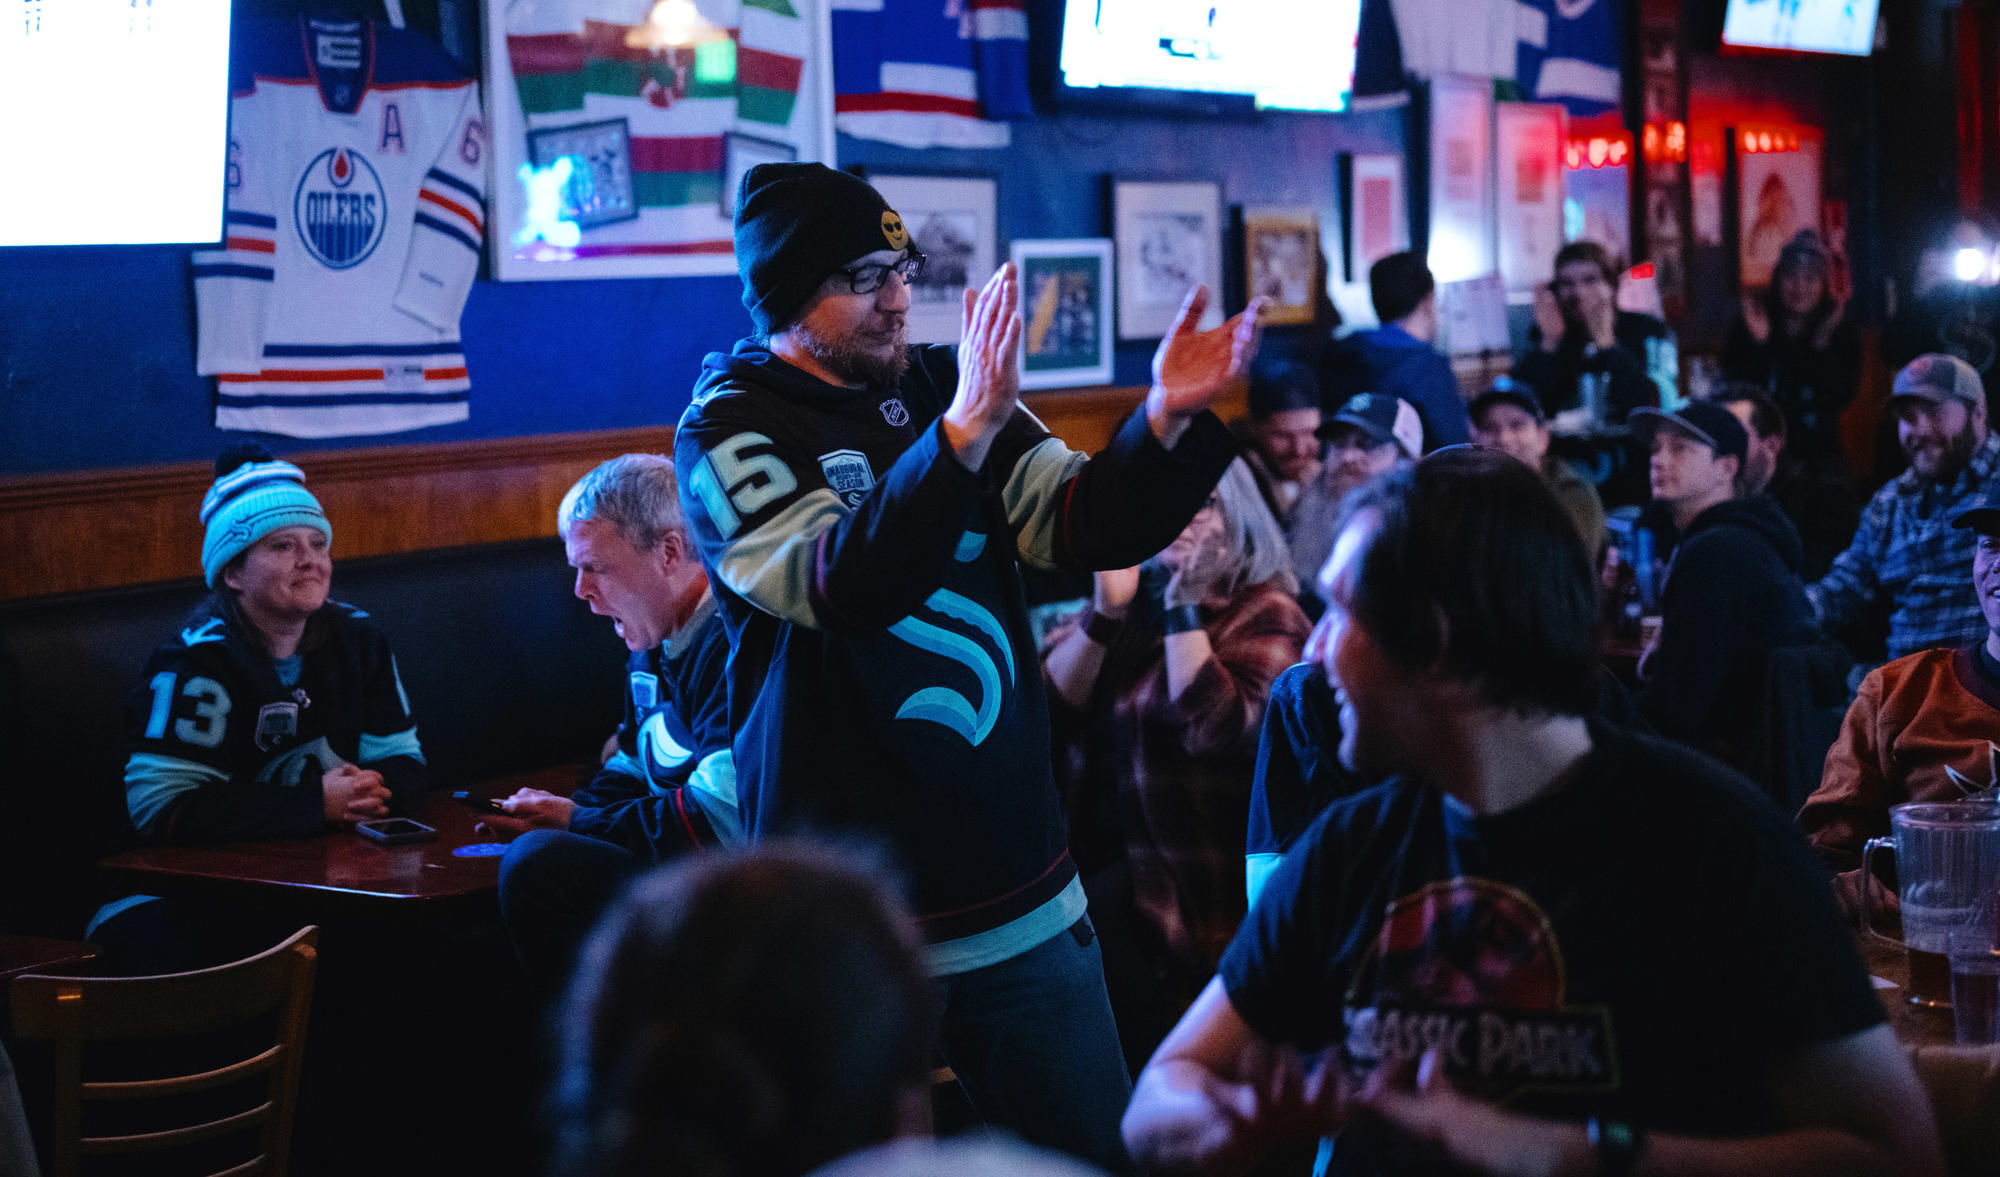 A fan stands in a Kraken jersey in a bar